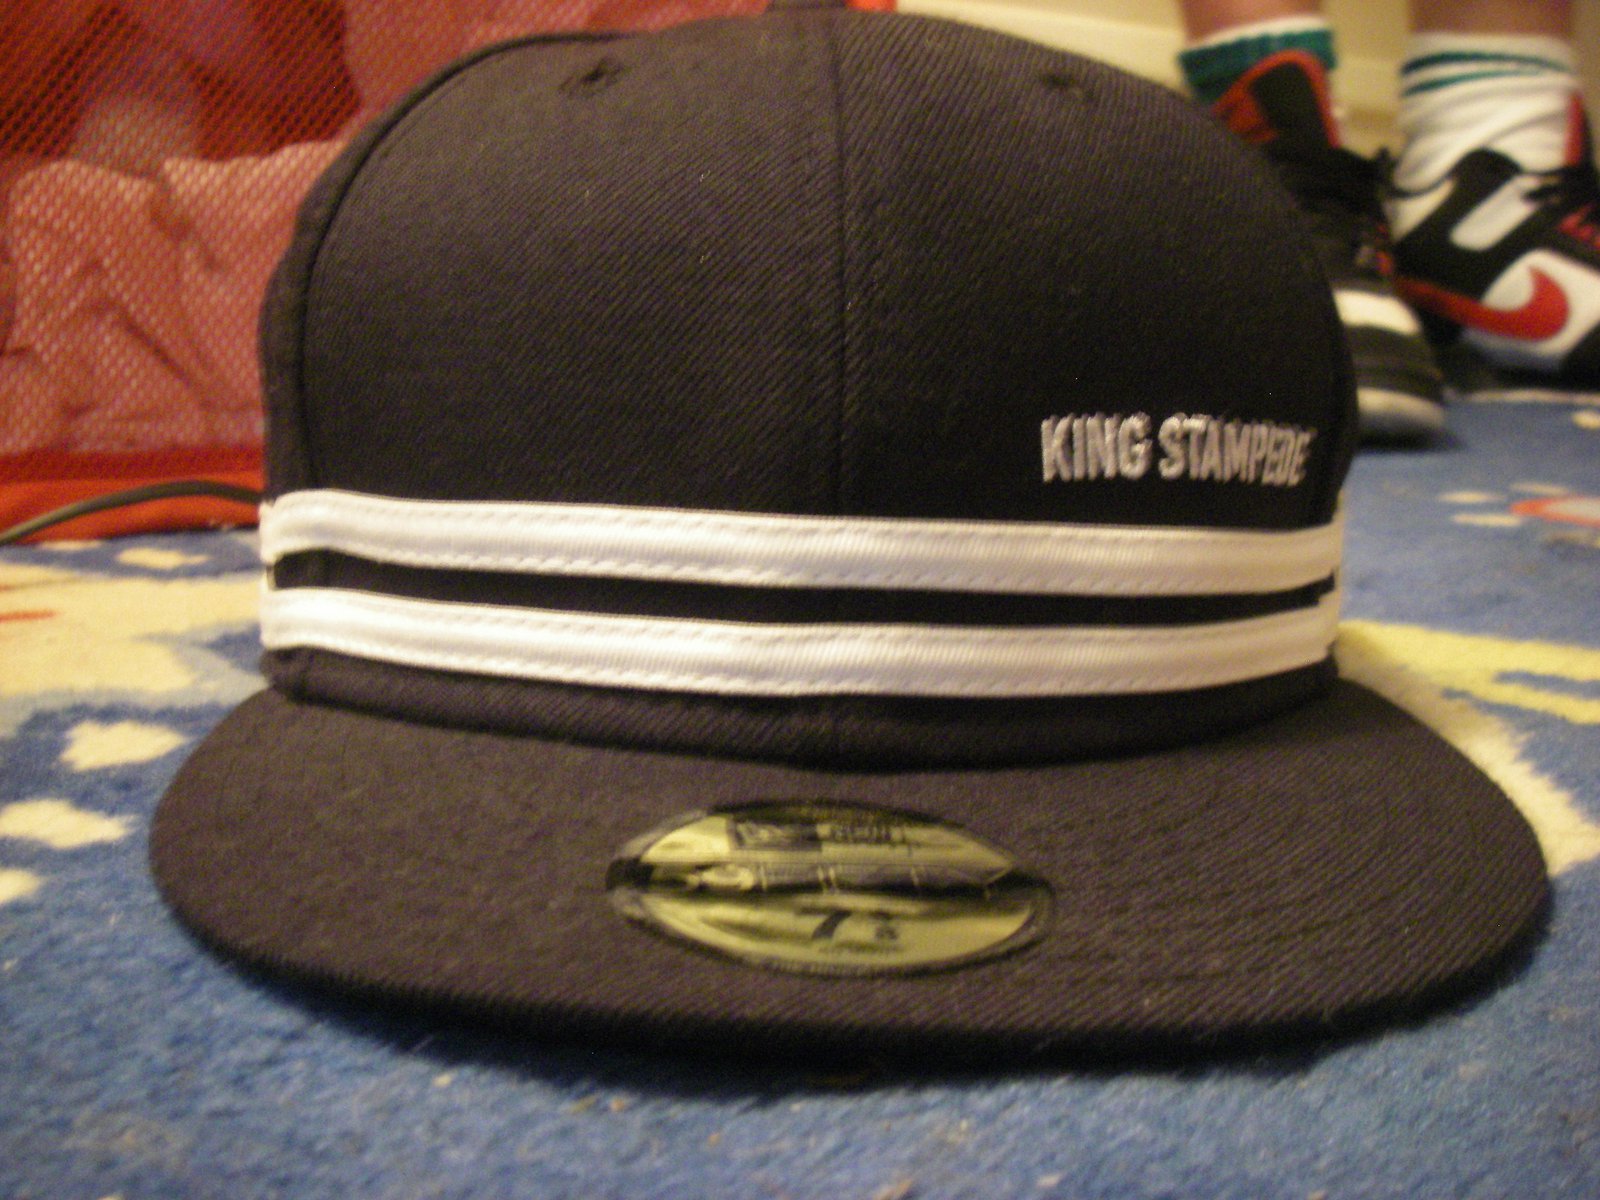 King stampede hat